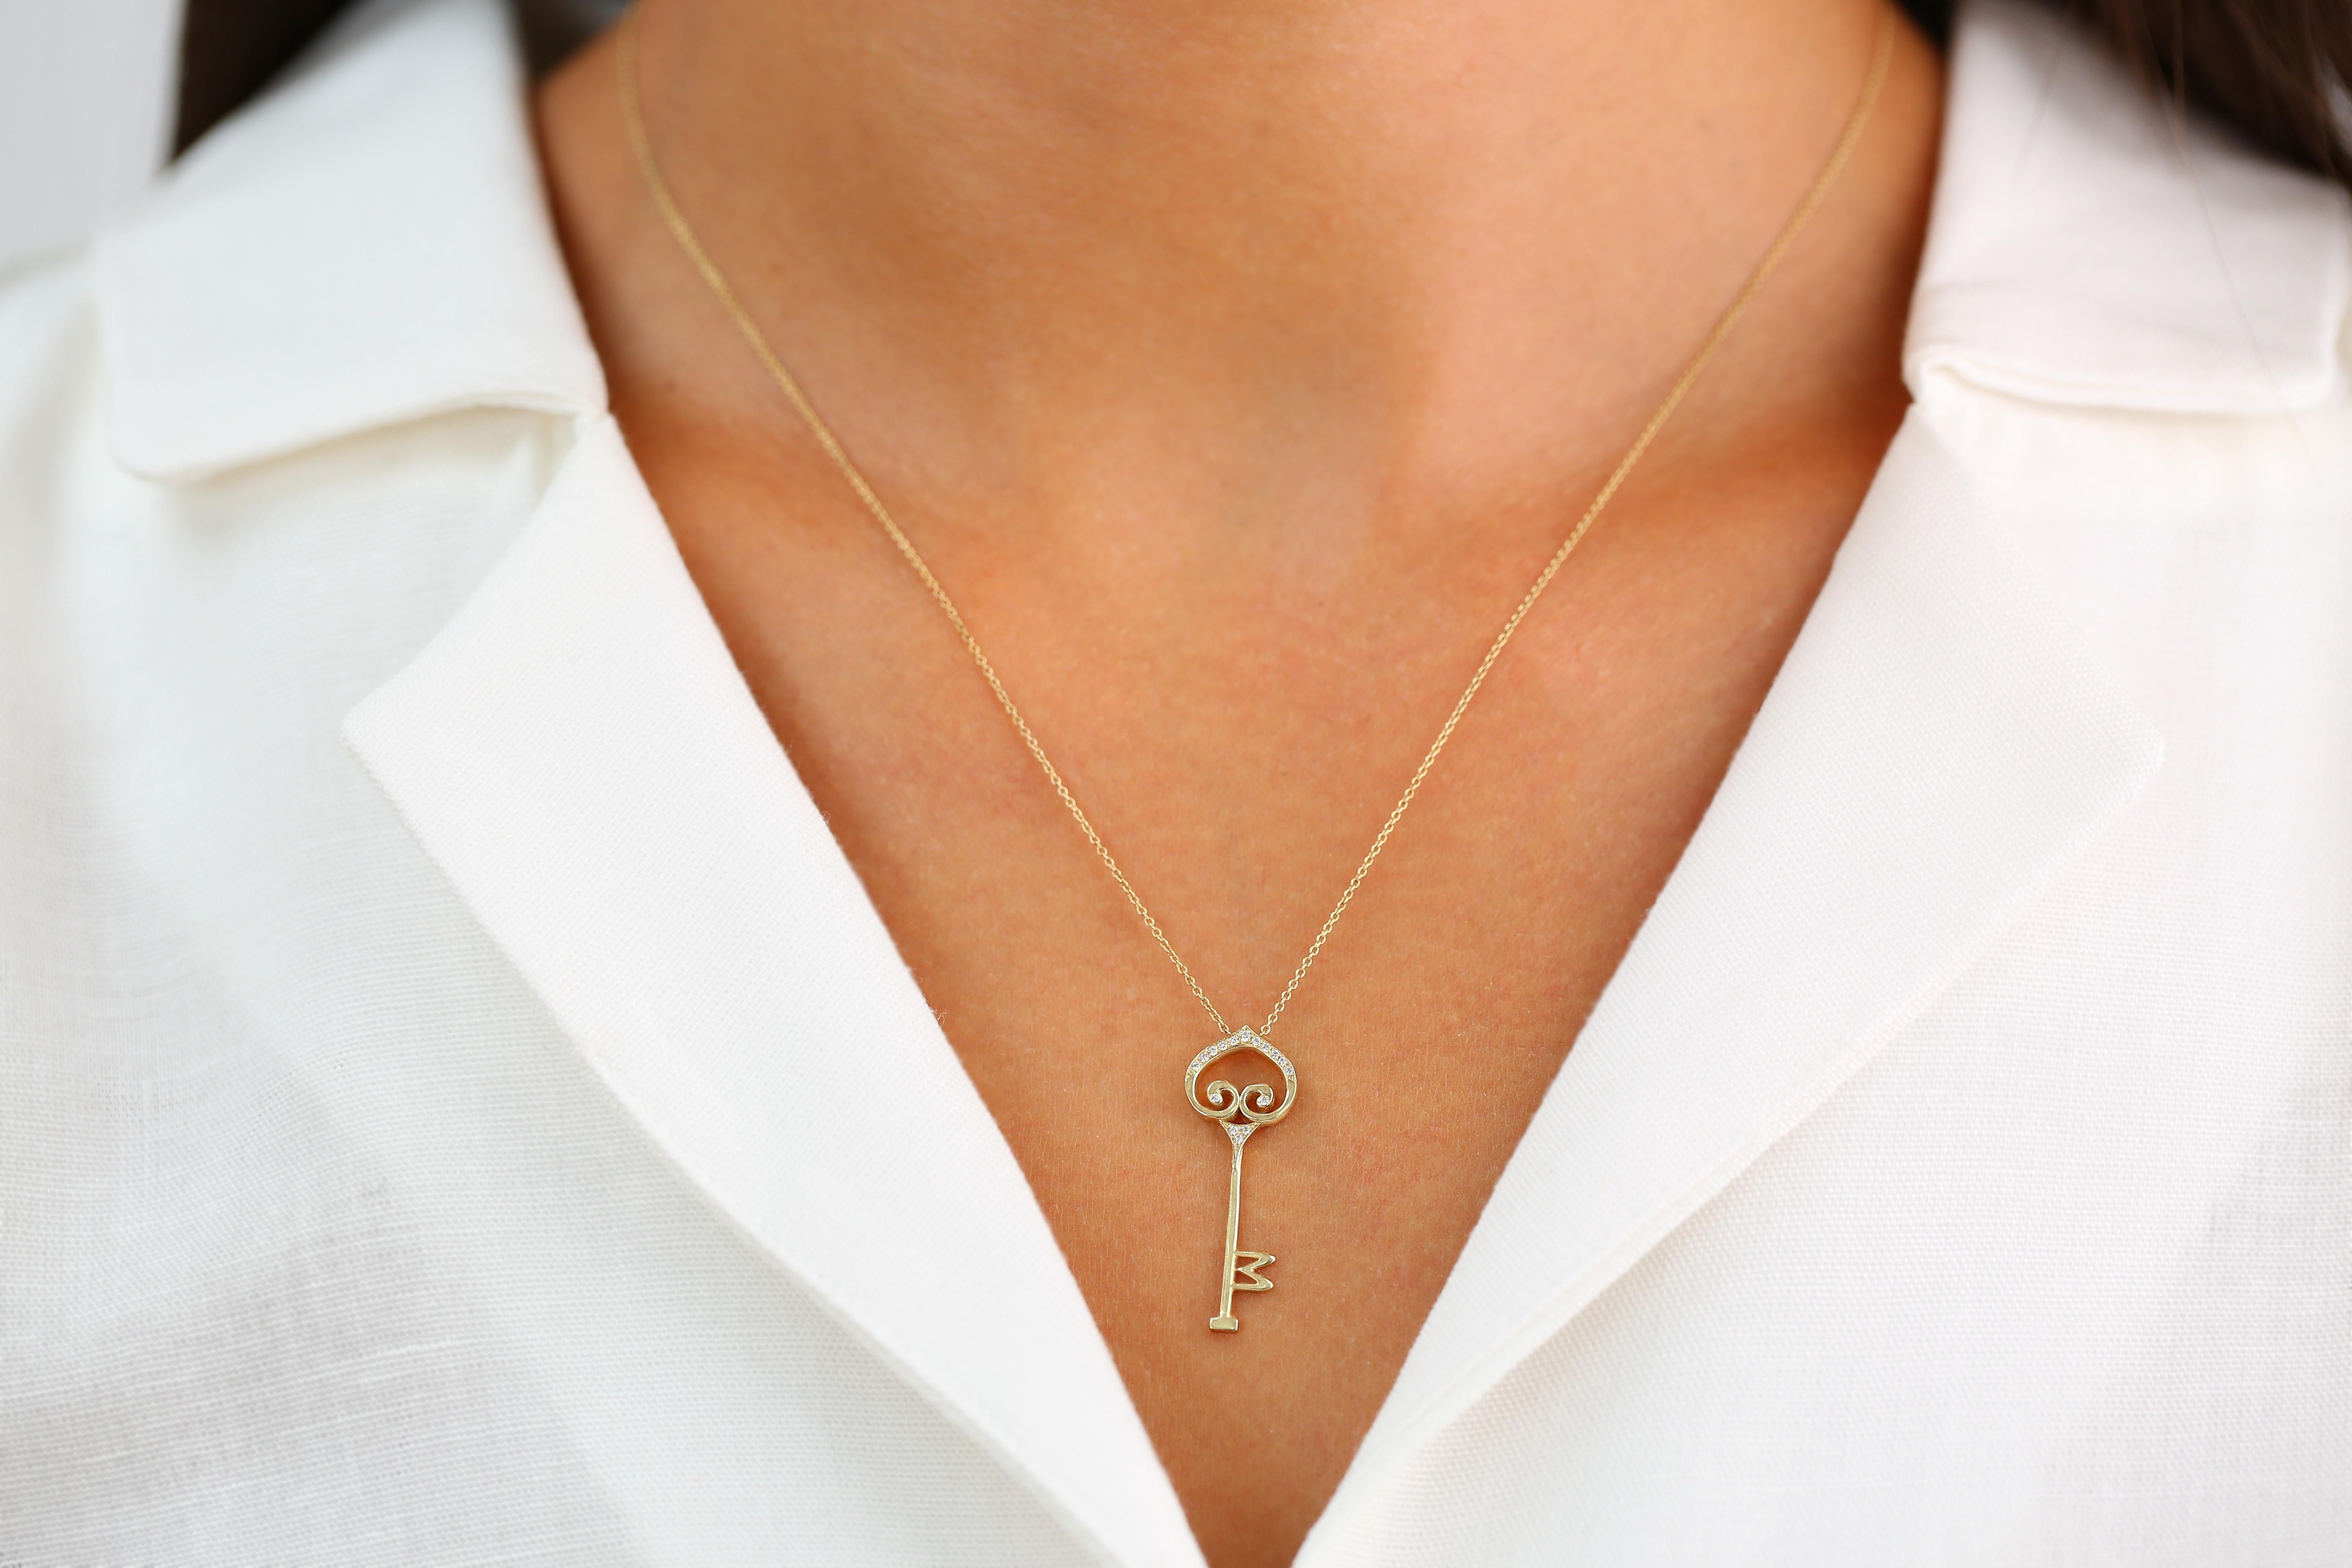 14K Gold-Schlüssel-Halskette mit Diamanten, Diamant-Schlüssel-Halskette, Gold-Schlüssel-Halskette, 14K Schlüssel-Halskette, Schlüssel-Charme-Halskette, Geschenk für Sie

Spezielles Design-Halsband mit Diamanten. Es ist ein Produkt der Handarbeit.